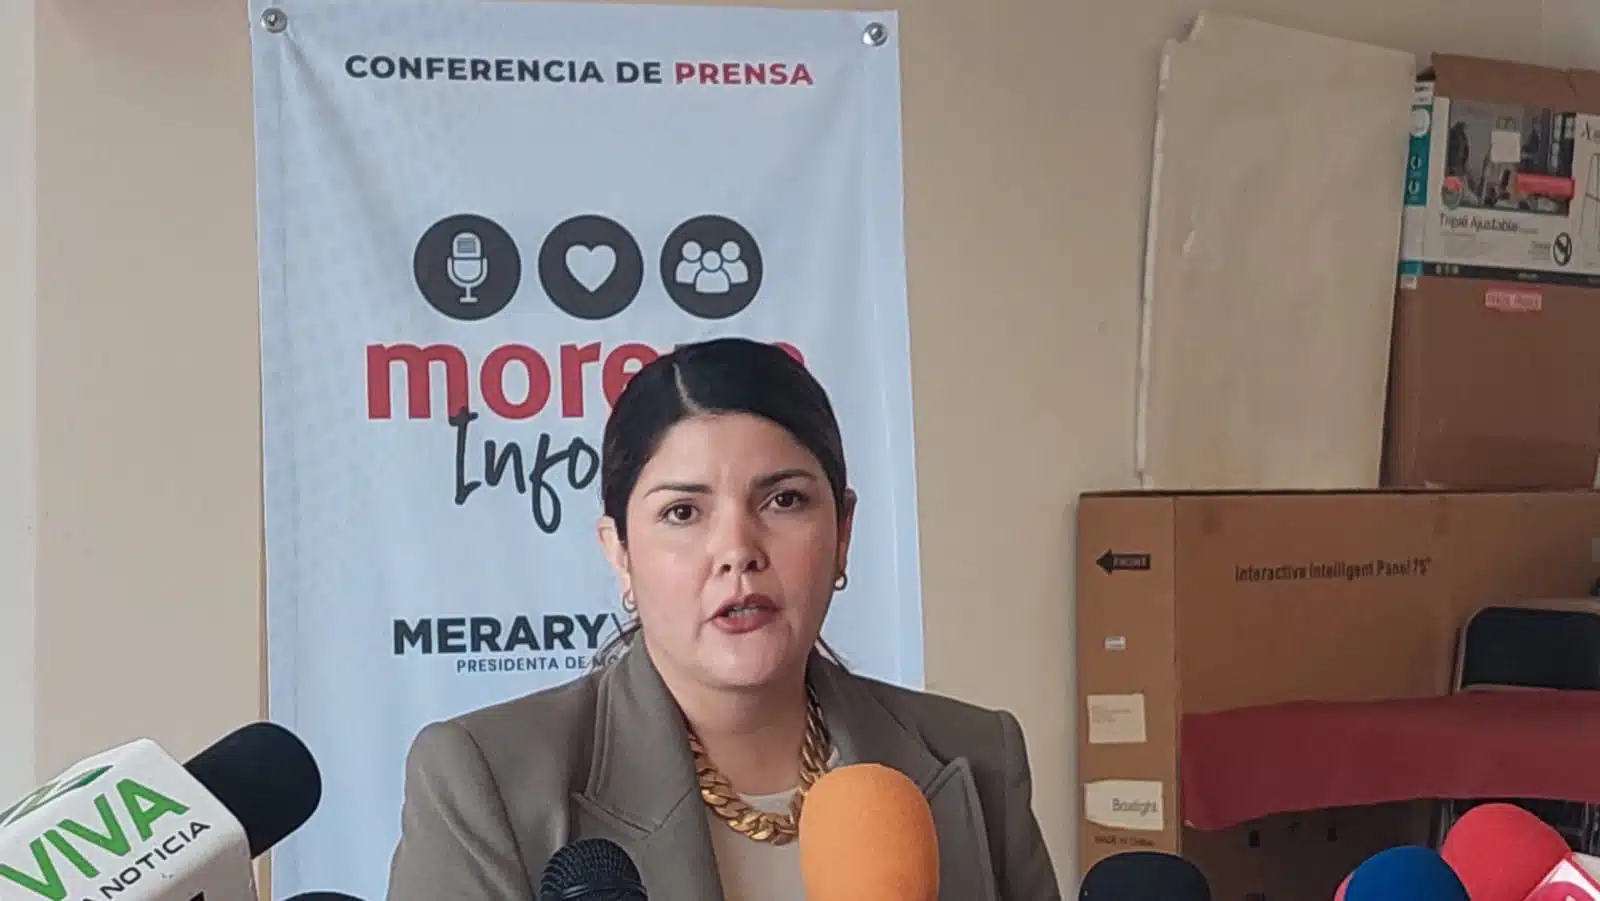 Merary Villegas Sánchez.